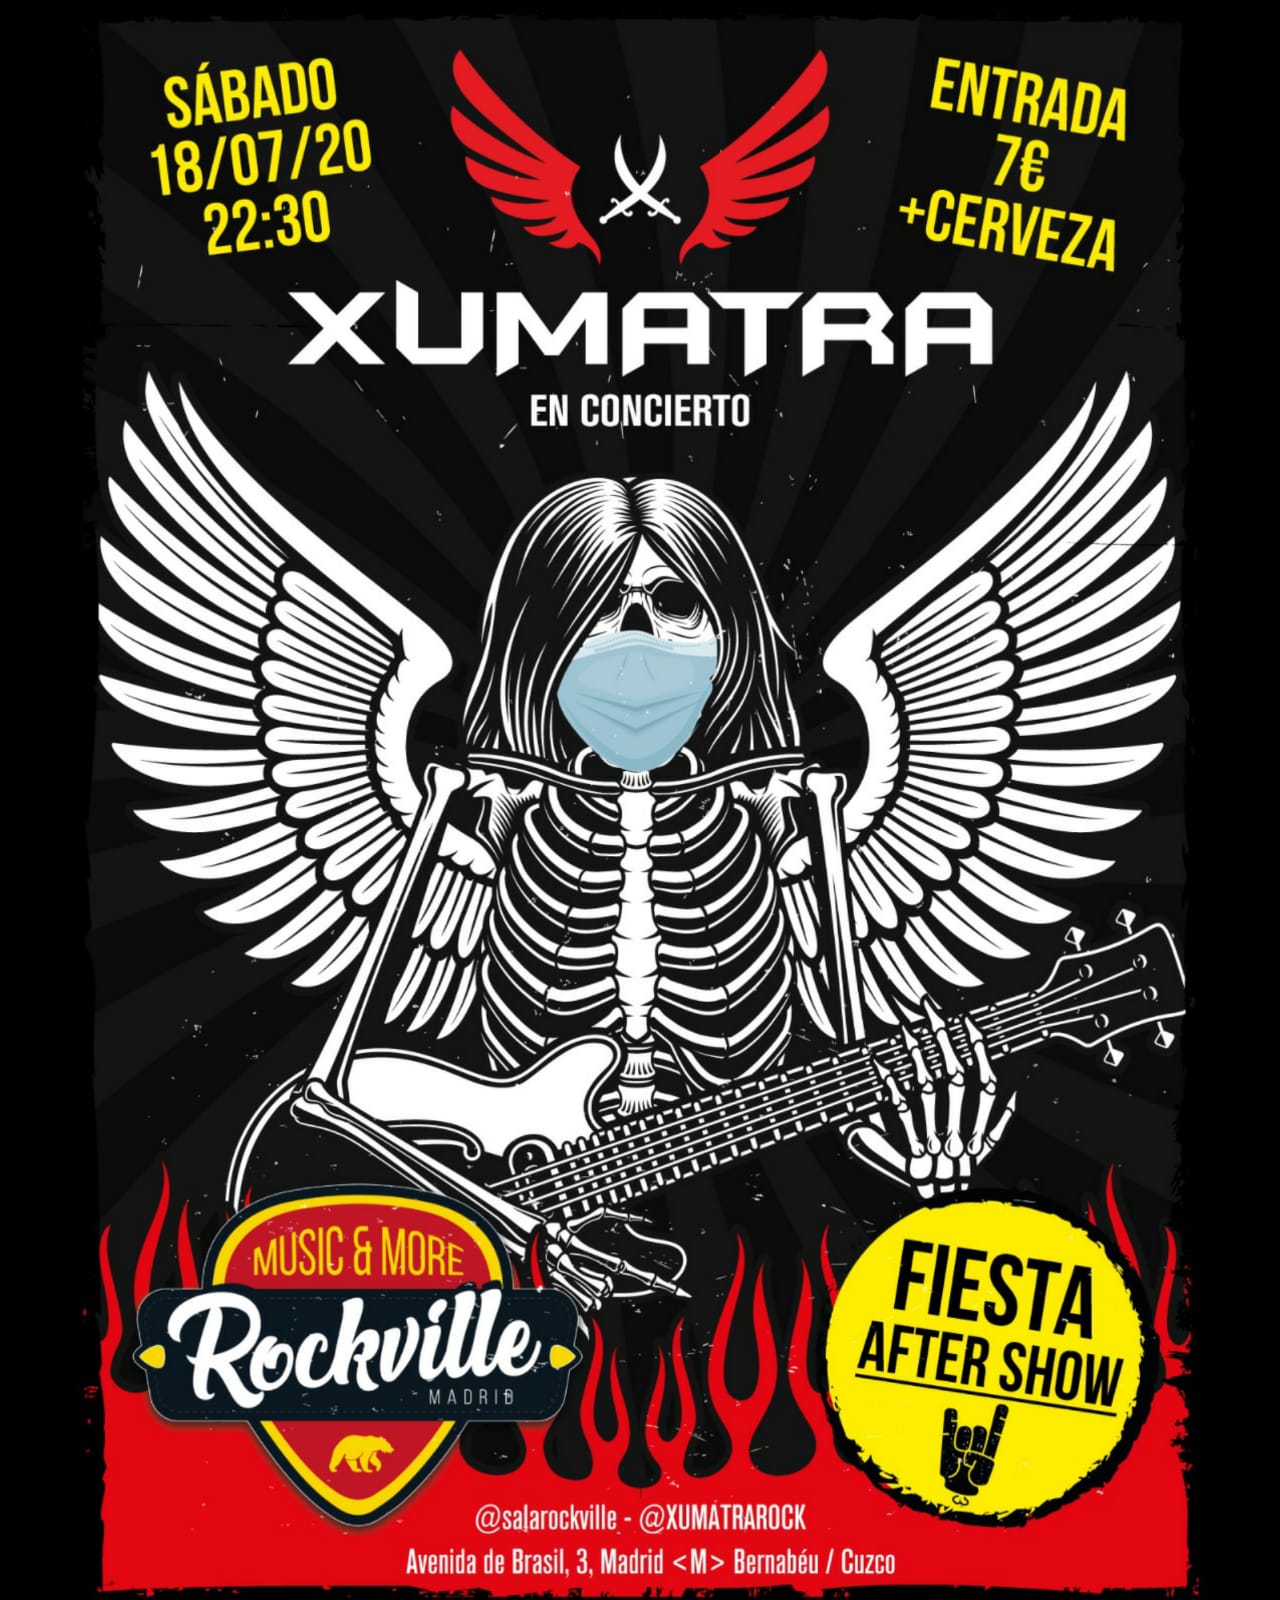 Concierto de Xumatra en Madrid el próximo sábado